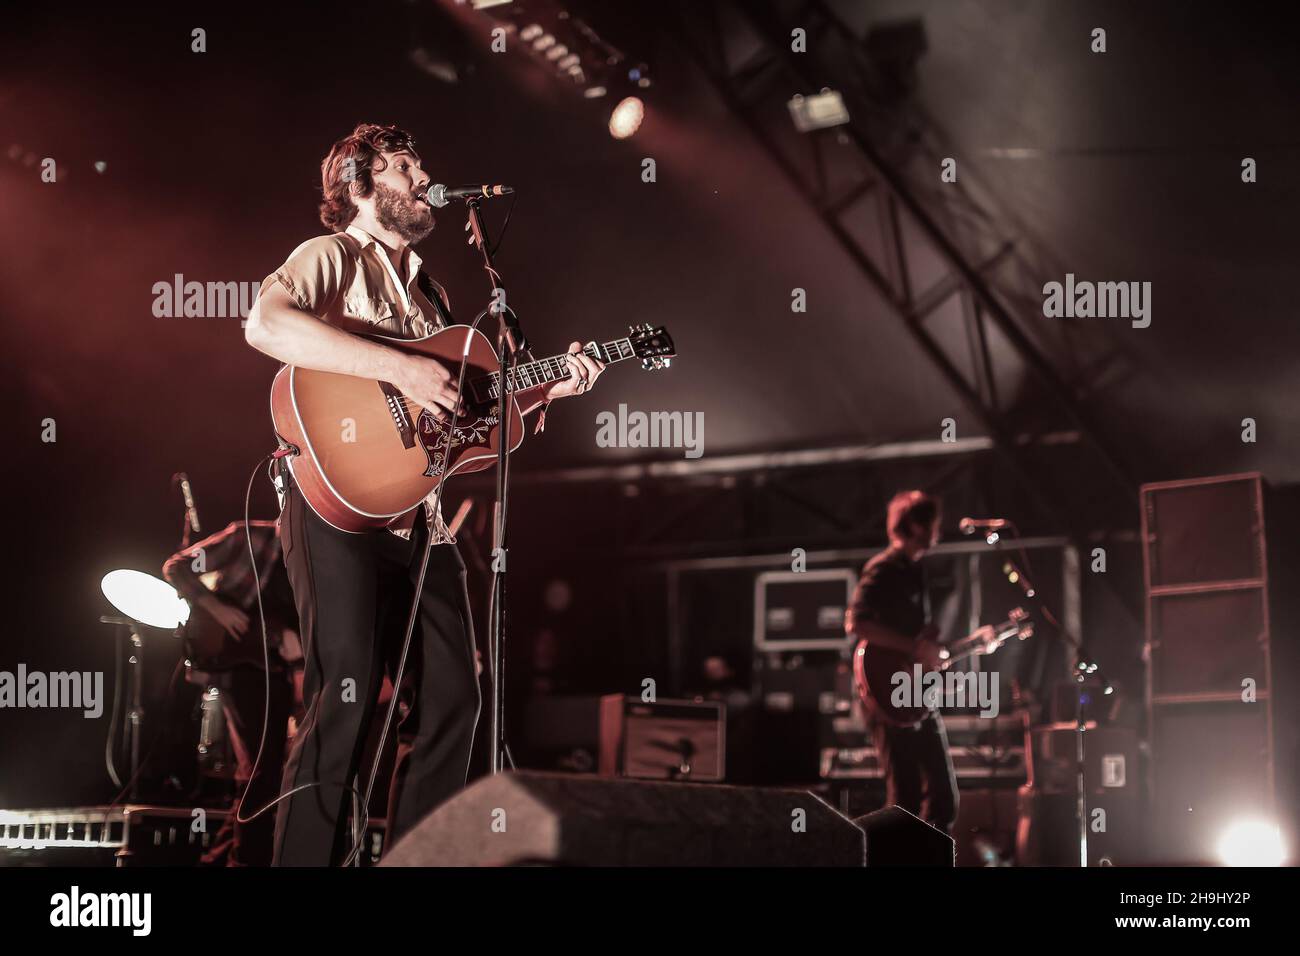 Tim Smith de Midlake actuando en vivo en el escenario como parte del festival Greenman 2013 en Glanusk, Gales del Sur Foto de stock